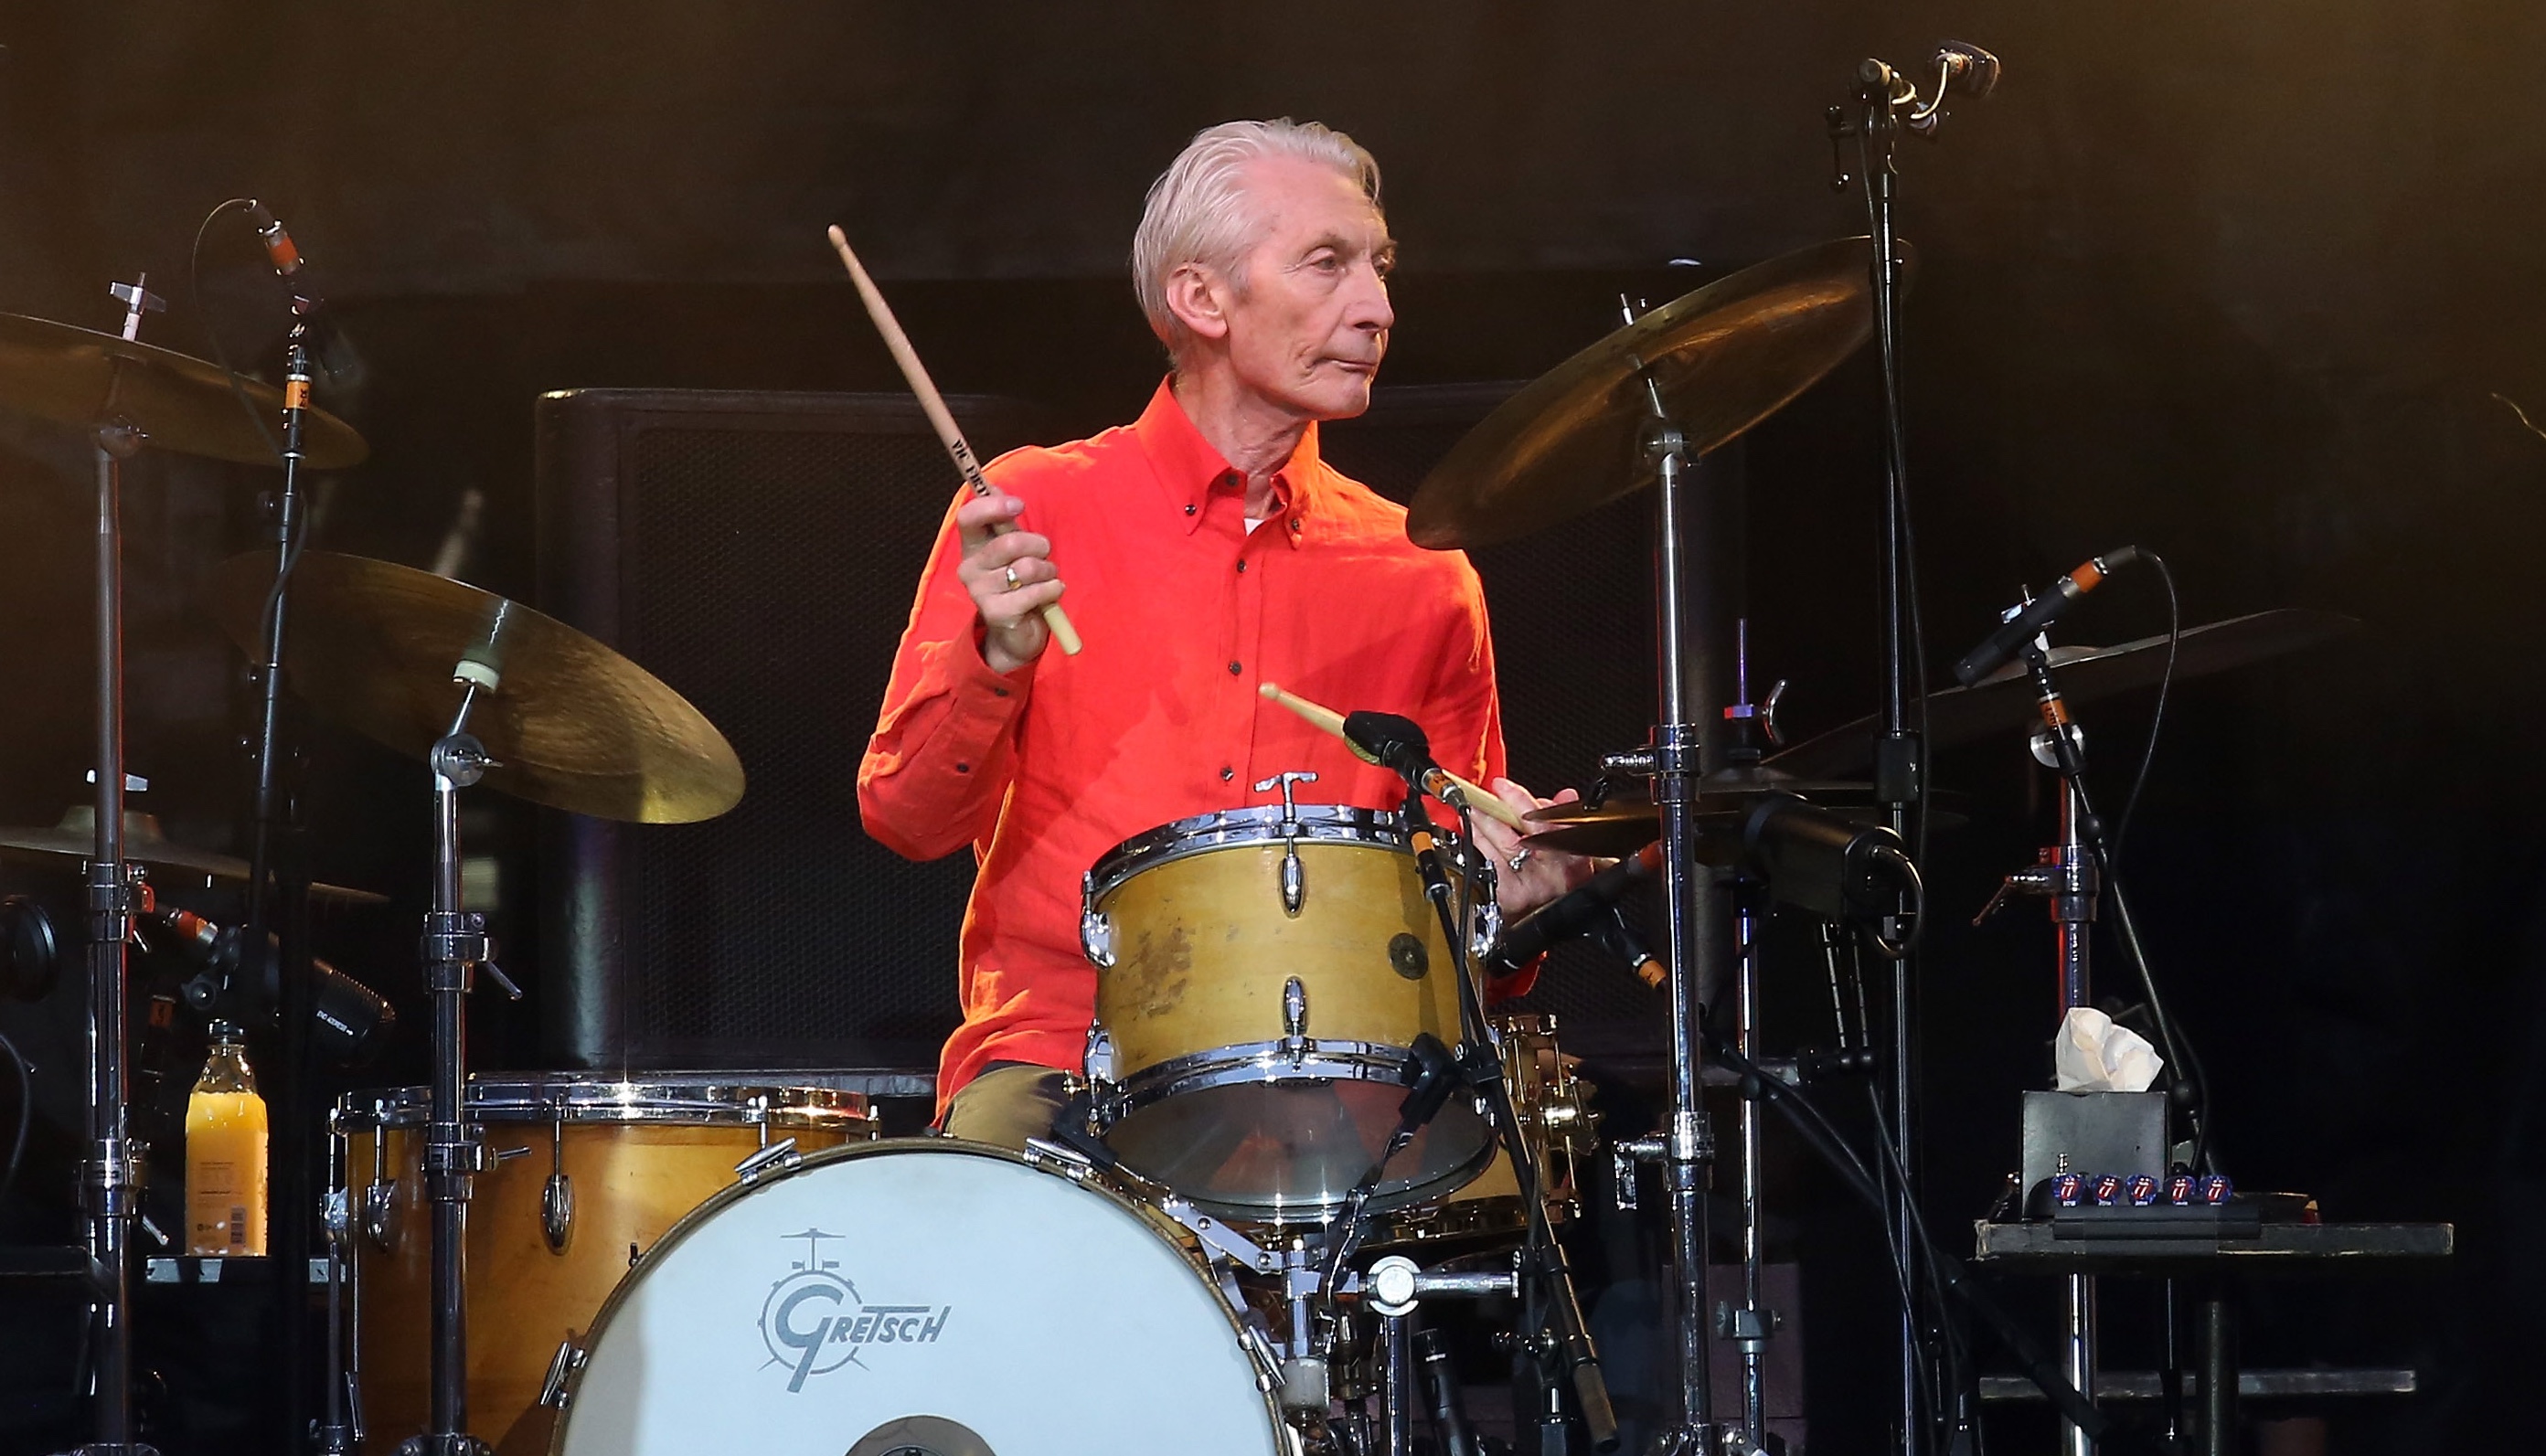 steht trotz seines Alters noch mit den Stones auf der Bühne: Charlie Watts feiert seinen 78. Geburtstag